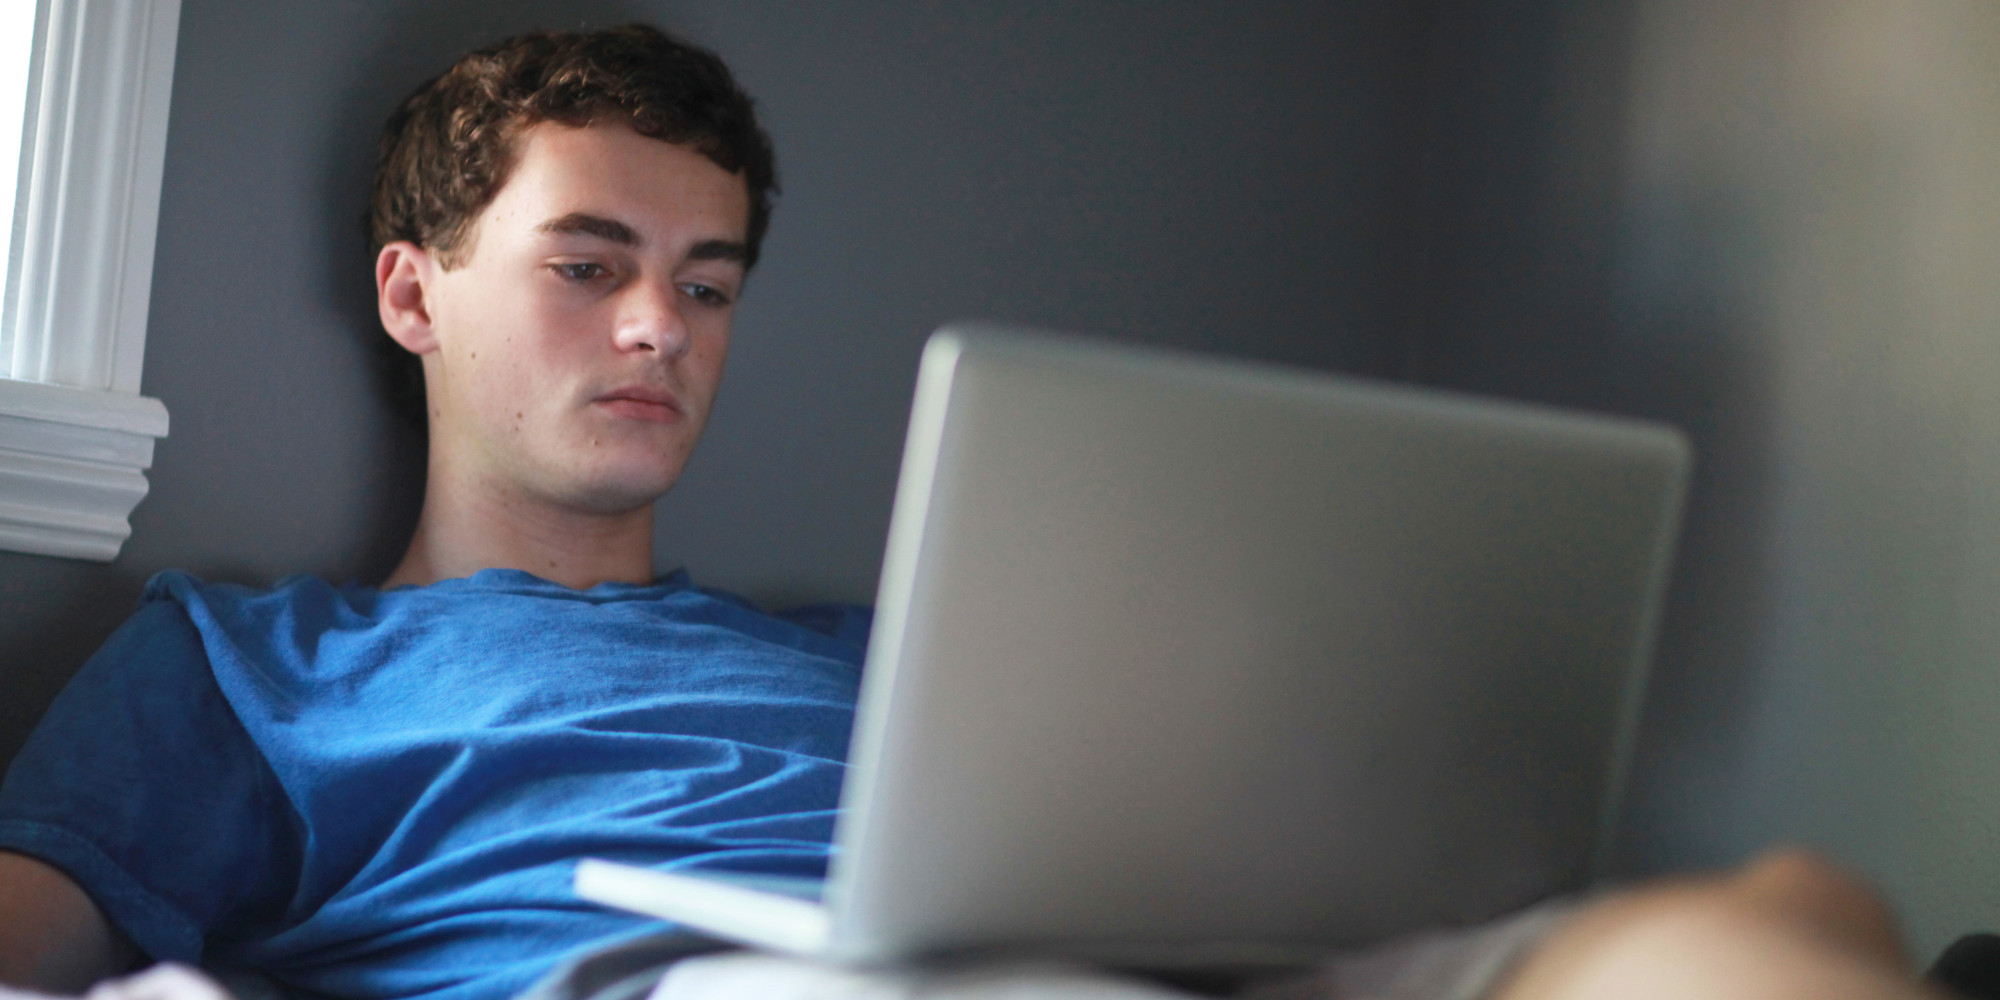 Teenage boy in room using laptop